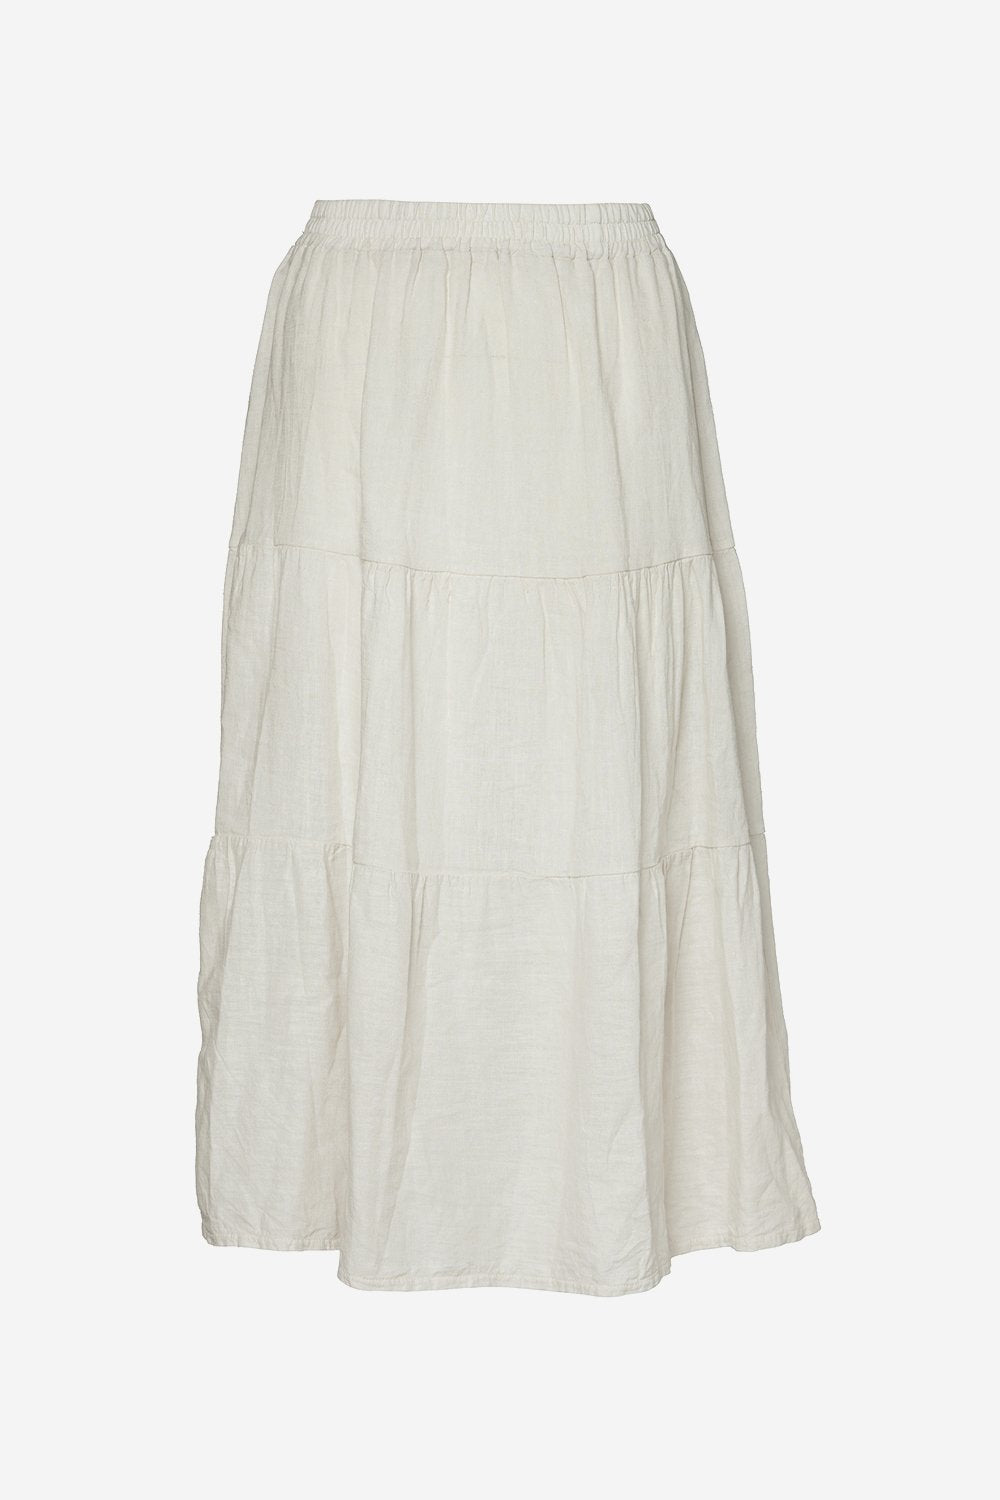 Jolene Skirt Linen Mix Beige